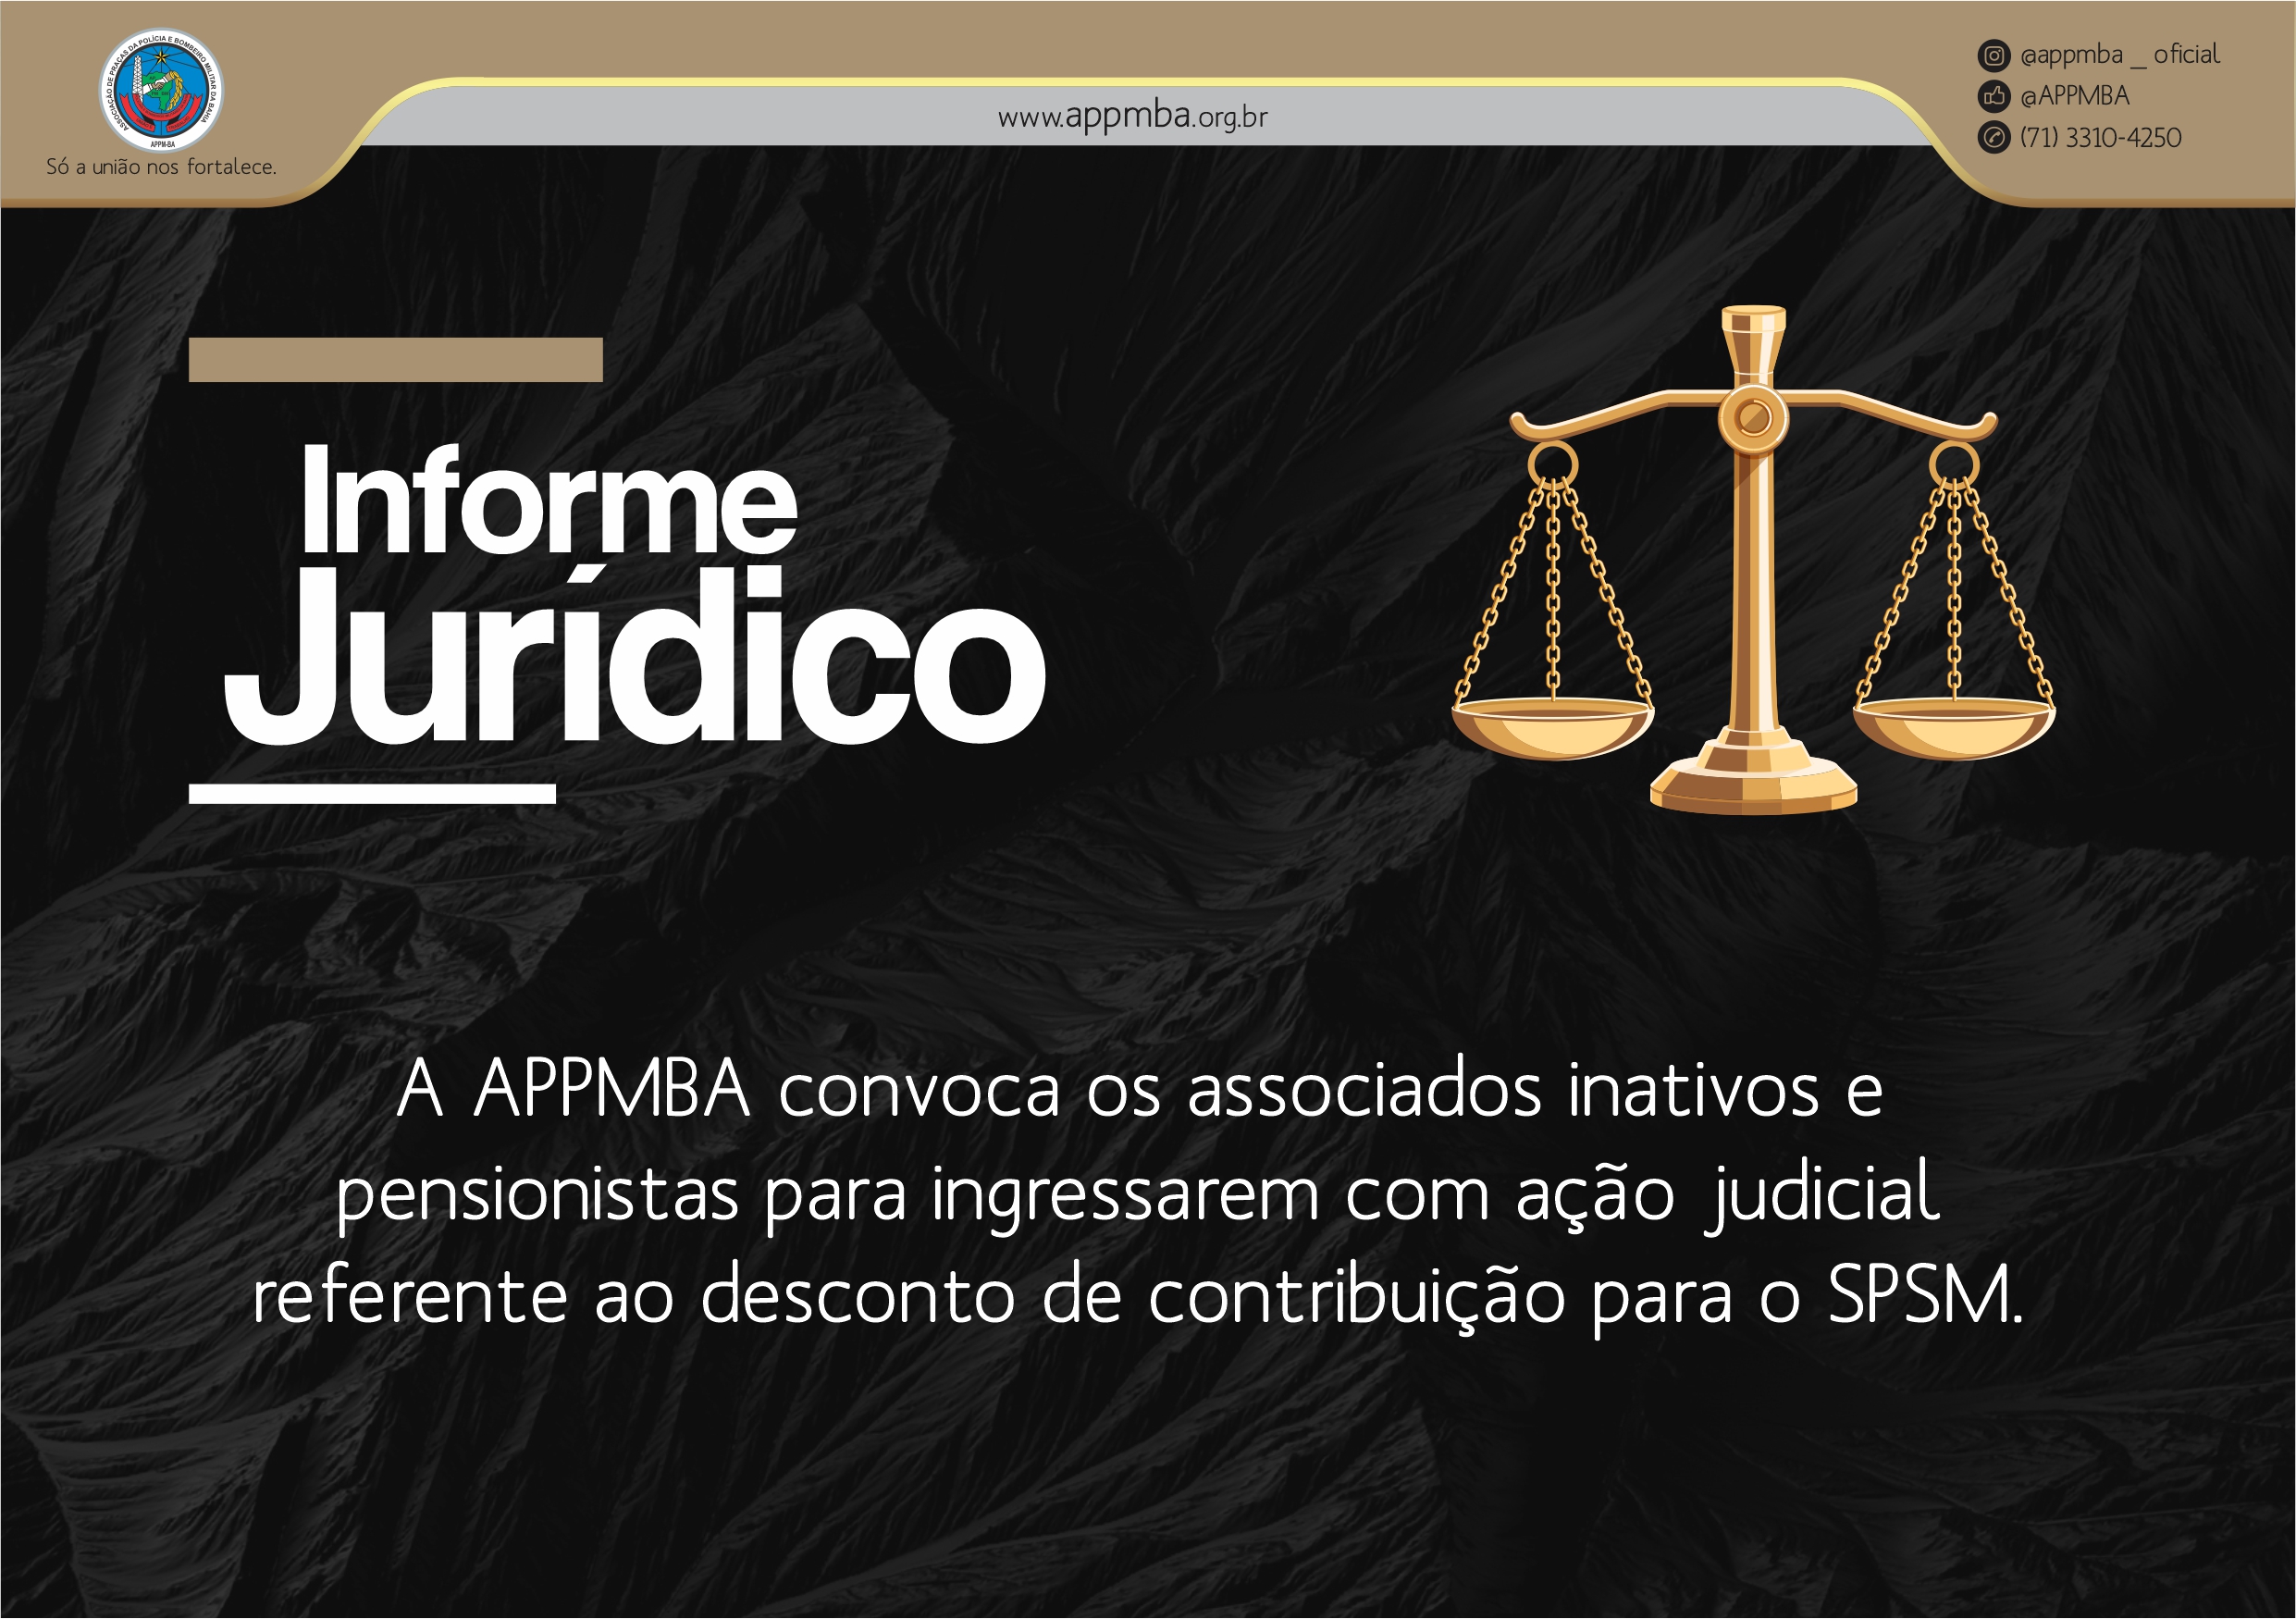 APPMBA convoca os associados inativos e pensionistas para ingressarem com ação judicial referente ao desconto de contribuição para o SPSM